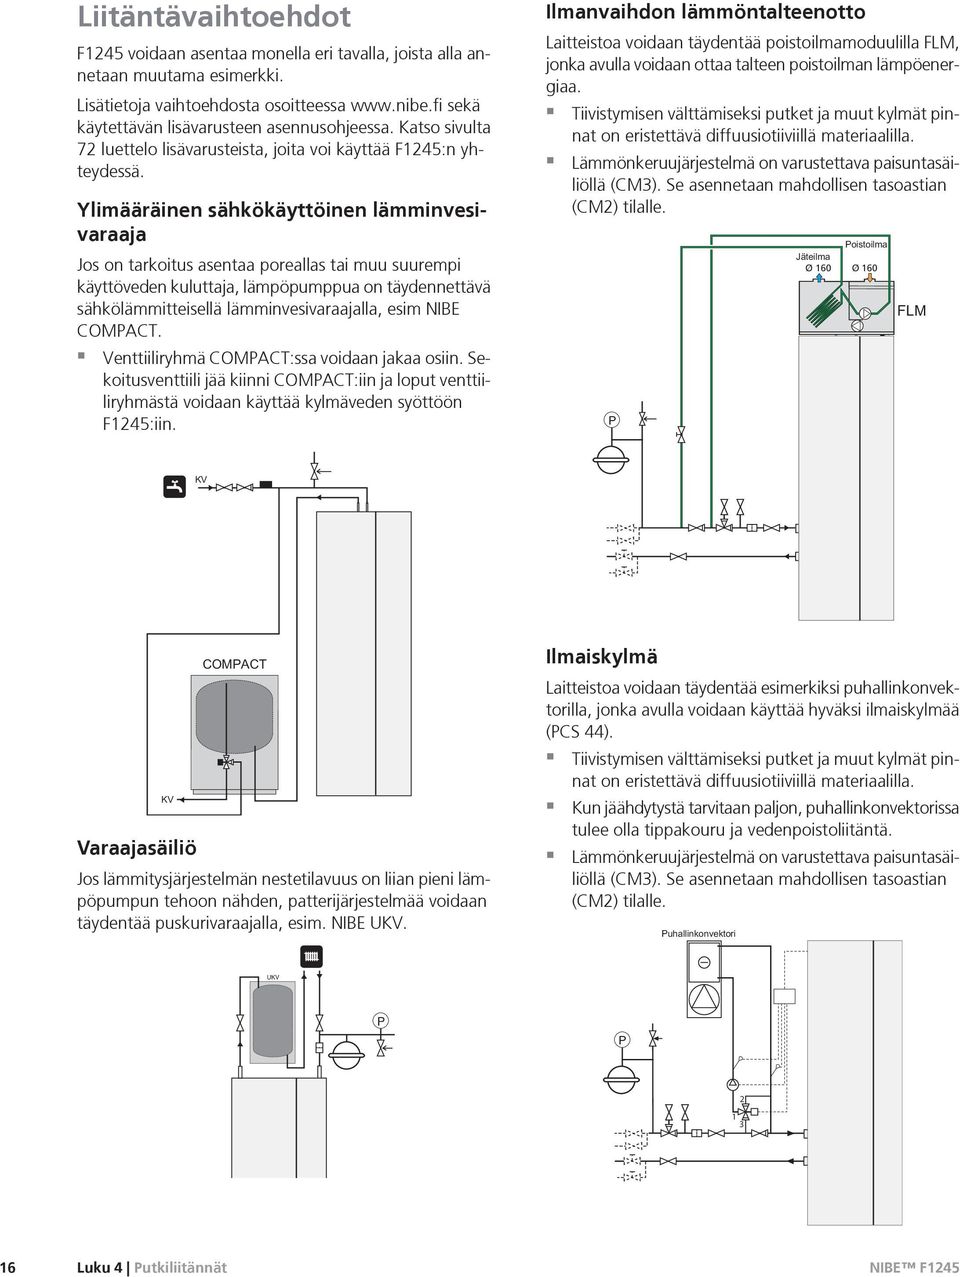 Ylimääräinen sähkökäyttöinen lämminvesivaraaja Jos on tarkoitus asentaa poreallas tai muu suurempi käyttöveden kuluttaja, lämpöpumppua on täydennettävä sähkölämmitteisellä lämminvesivaraajalla, esim